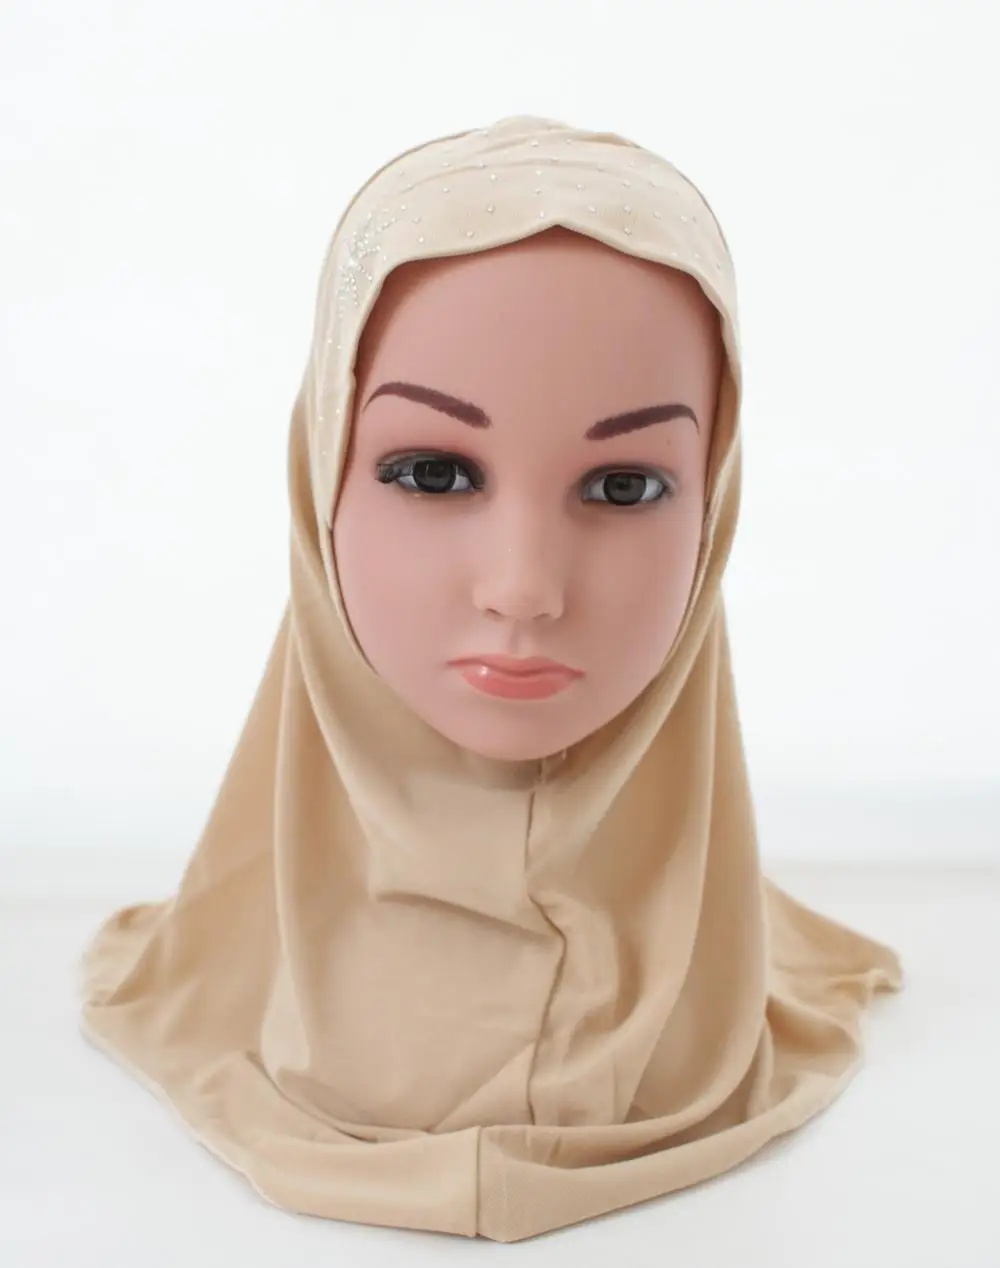 Мусульманский хиджаб для девочек, исламский шарф в арабском стиле, шали, красивые стразы, модные головные уборы, аксессуары для детей от 3 до 8 лет - Цвет: Бежевый